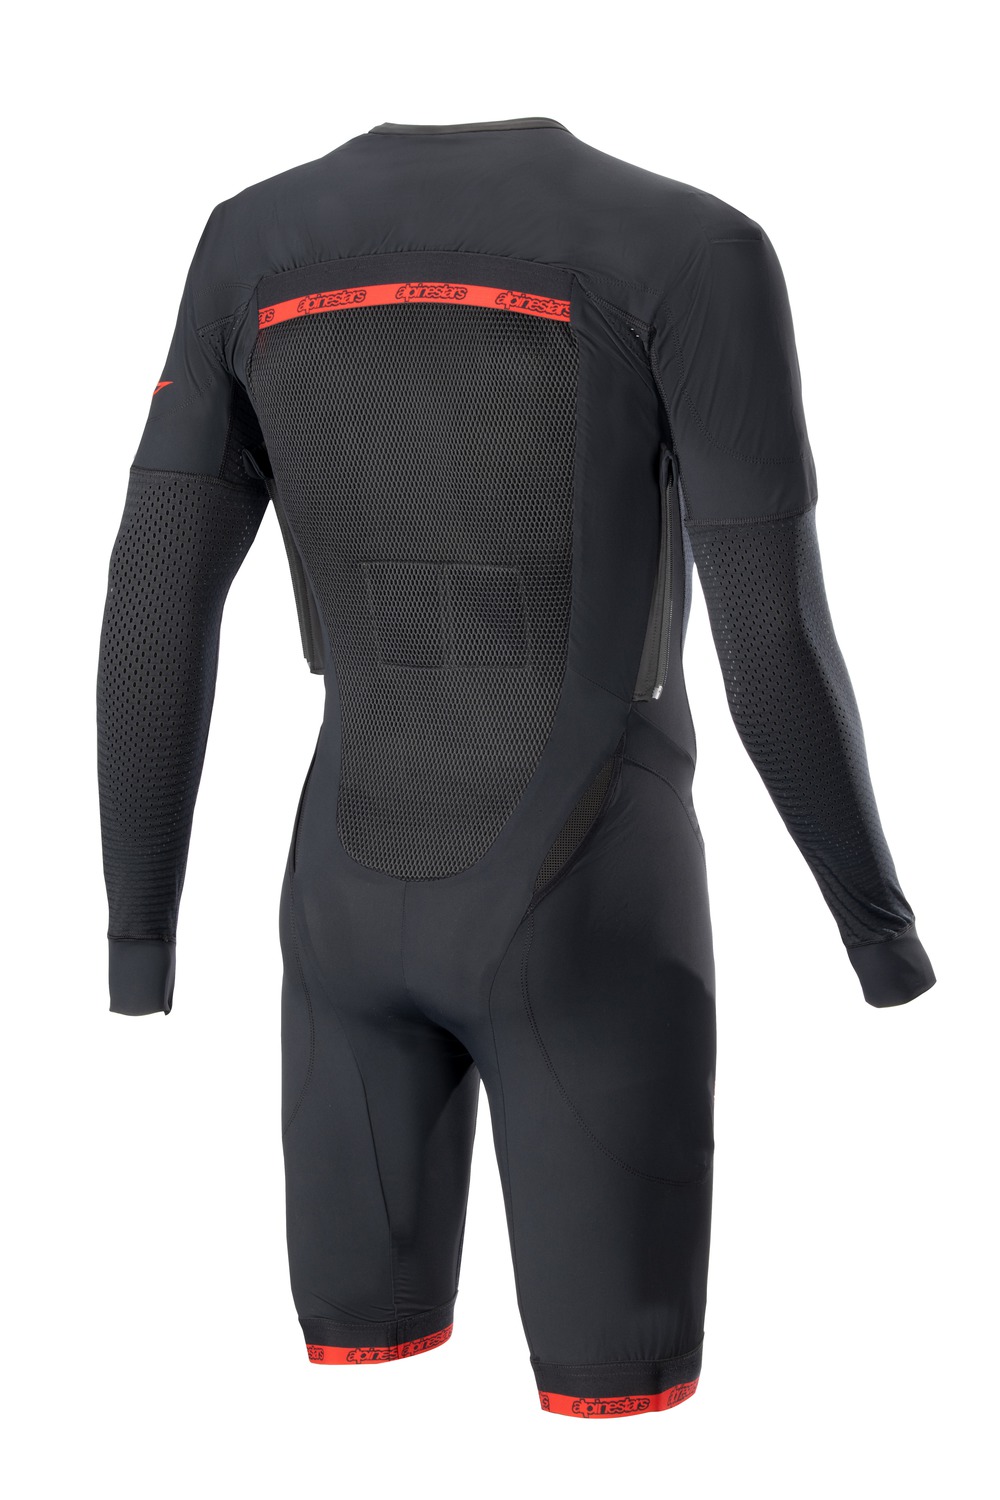 Obrázek produktu vnější vrstva airbagové vesty TECH-AIR®10, ALPINESTARS (černá/červená/šedá, standardní provedení s krátkými nohavicemi)